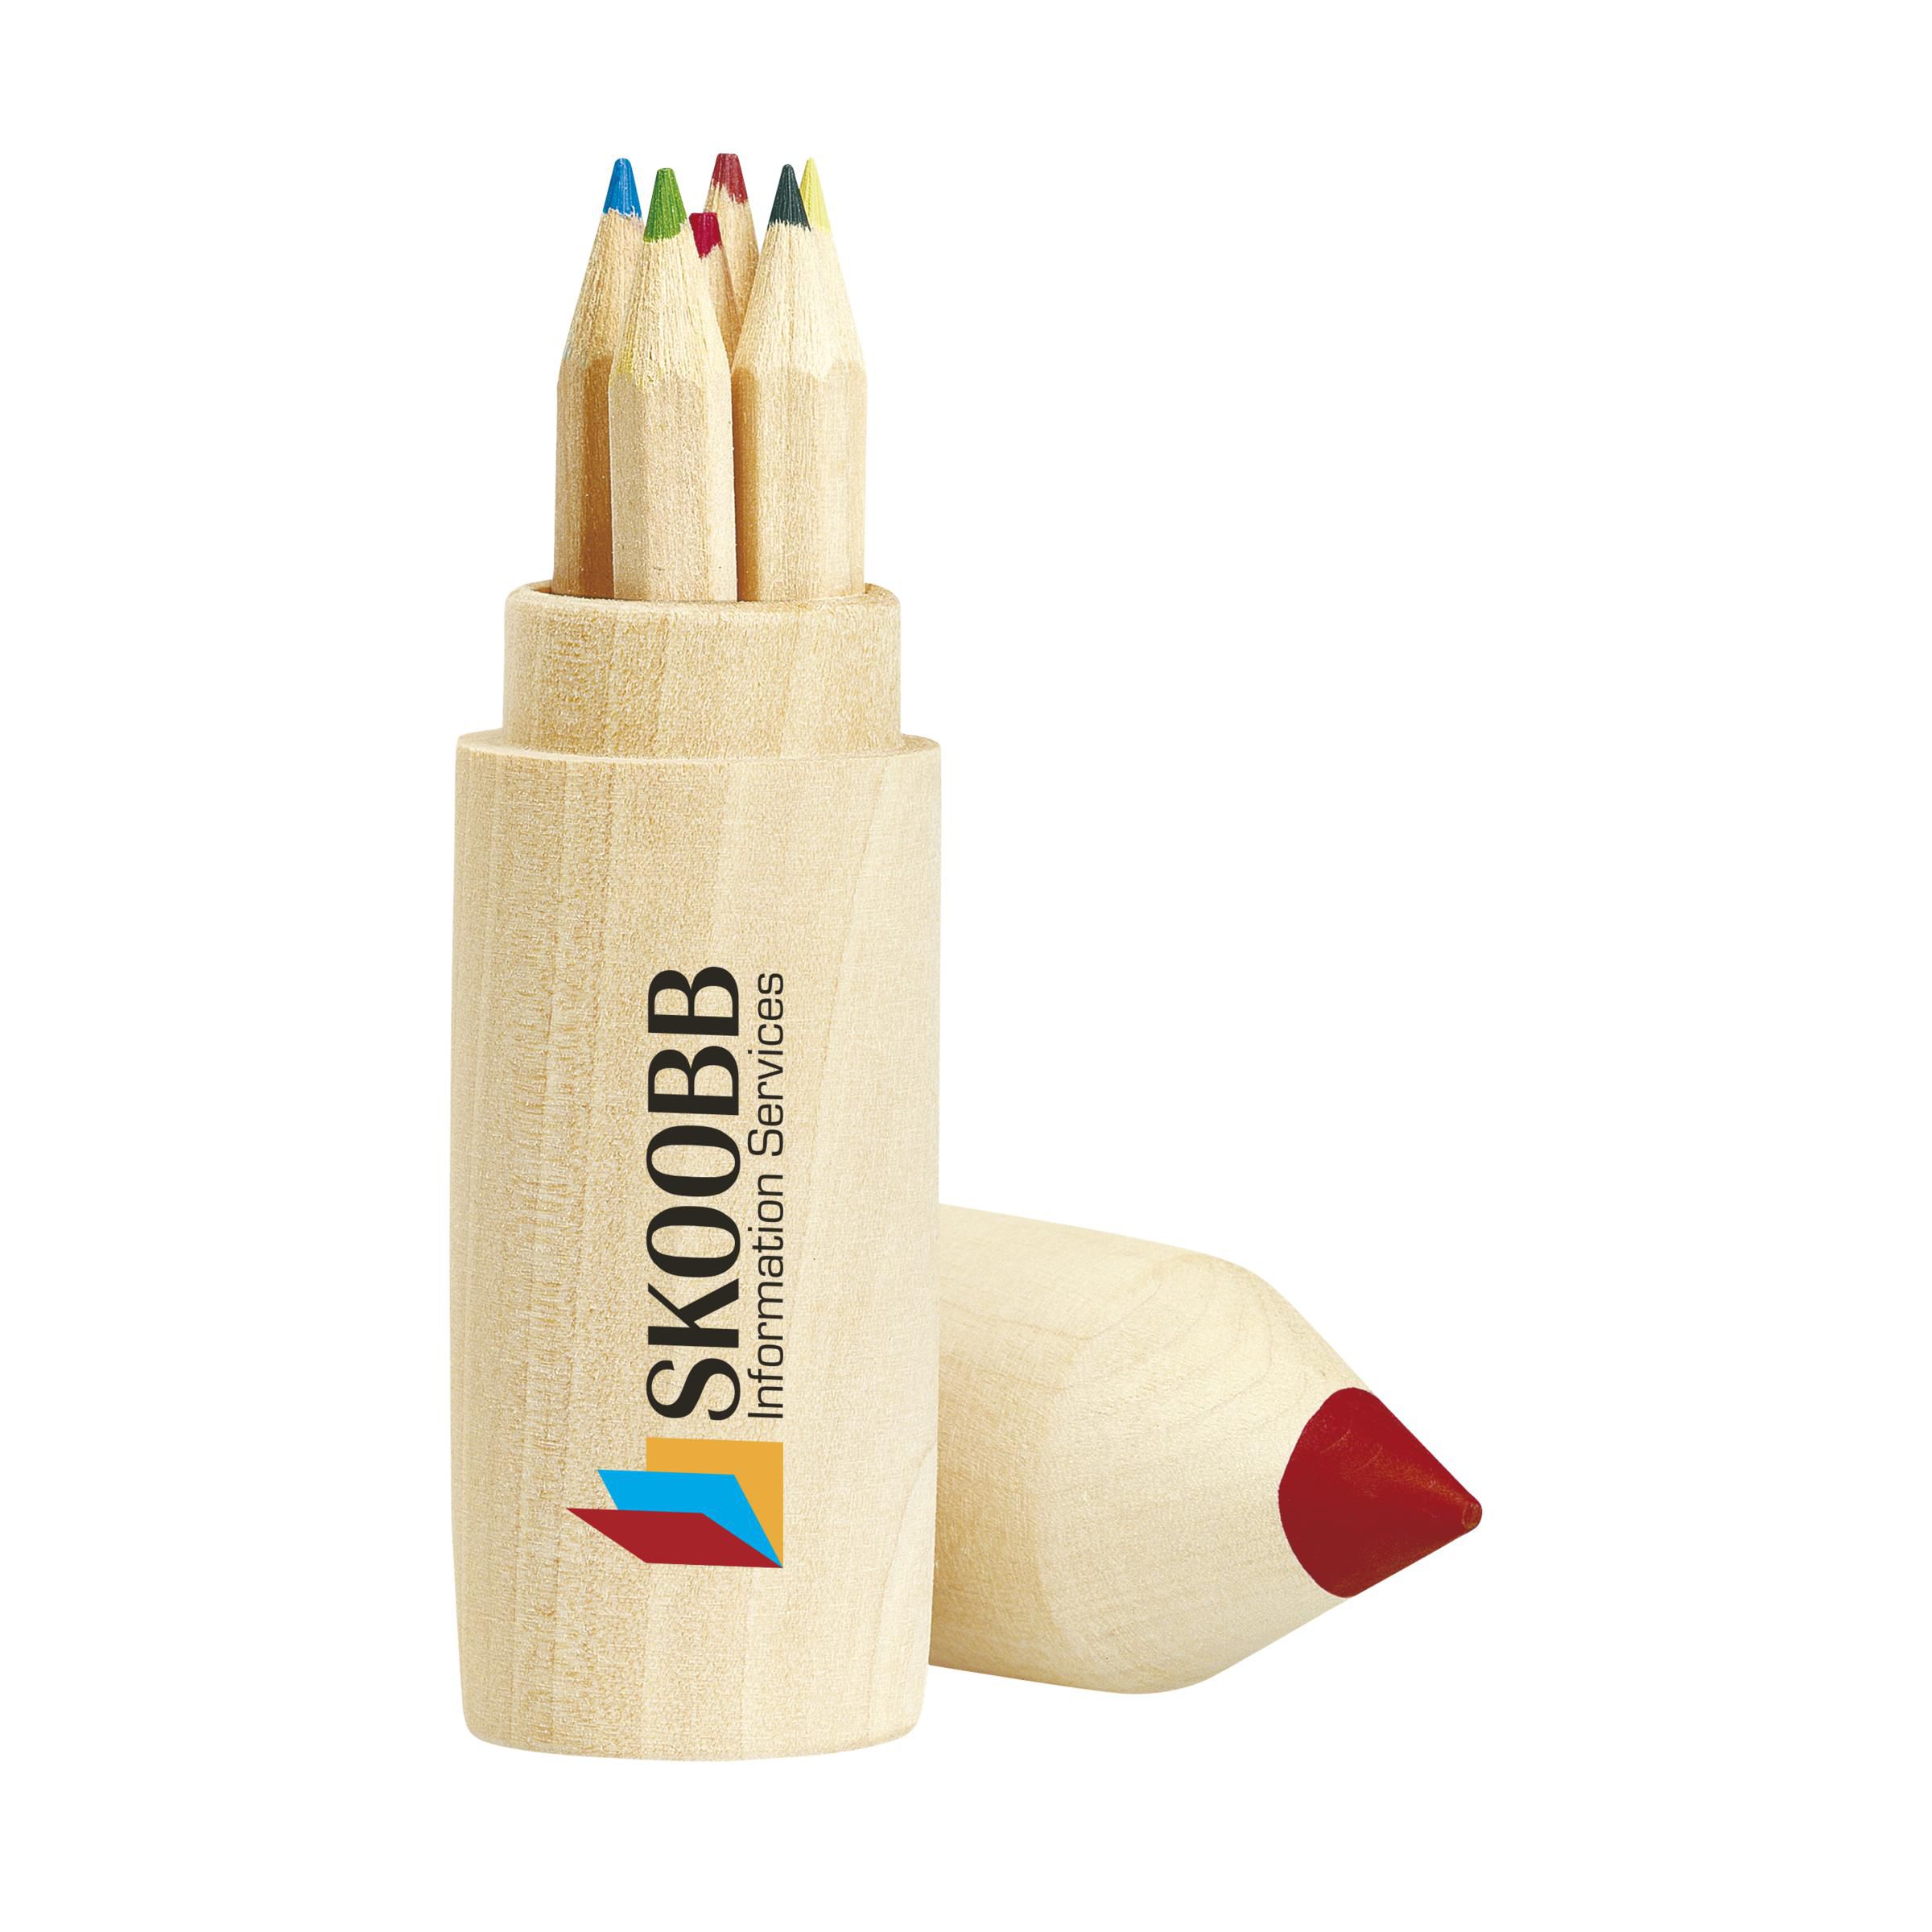 Lápices de colores sin pintar en tubo de madera - Cox